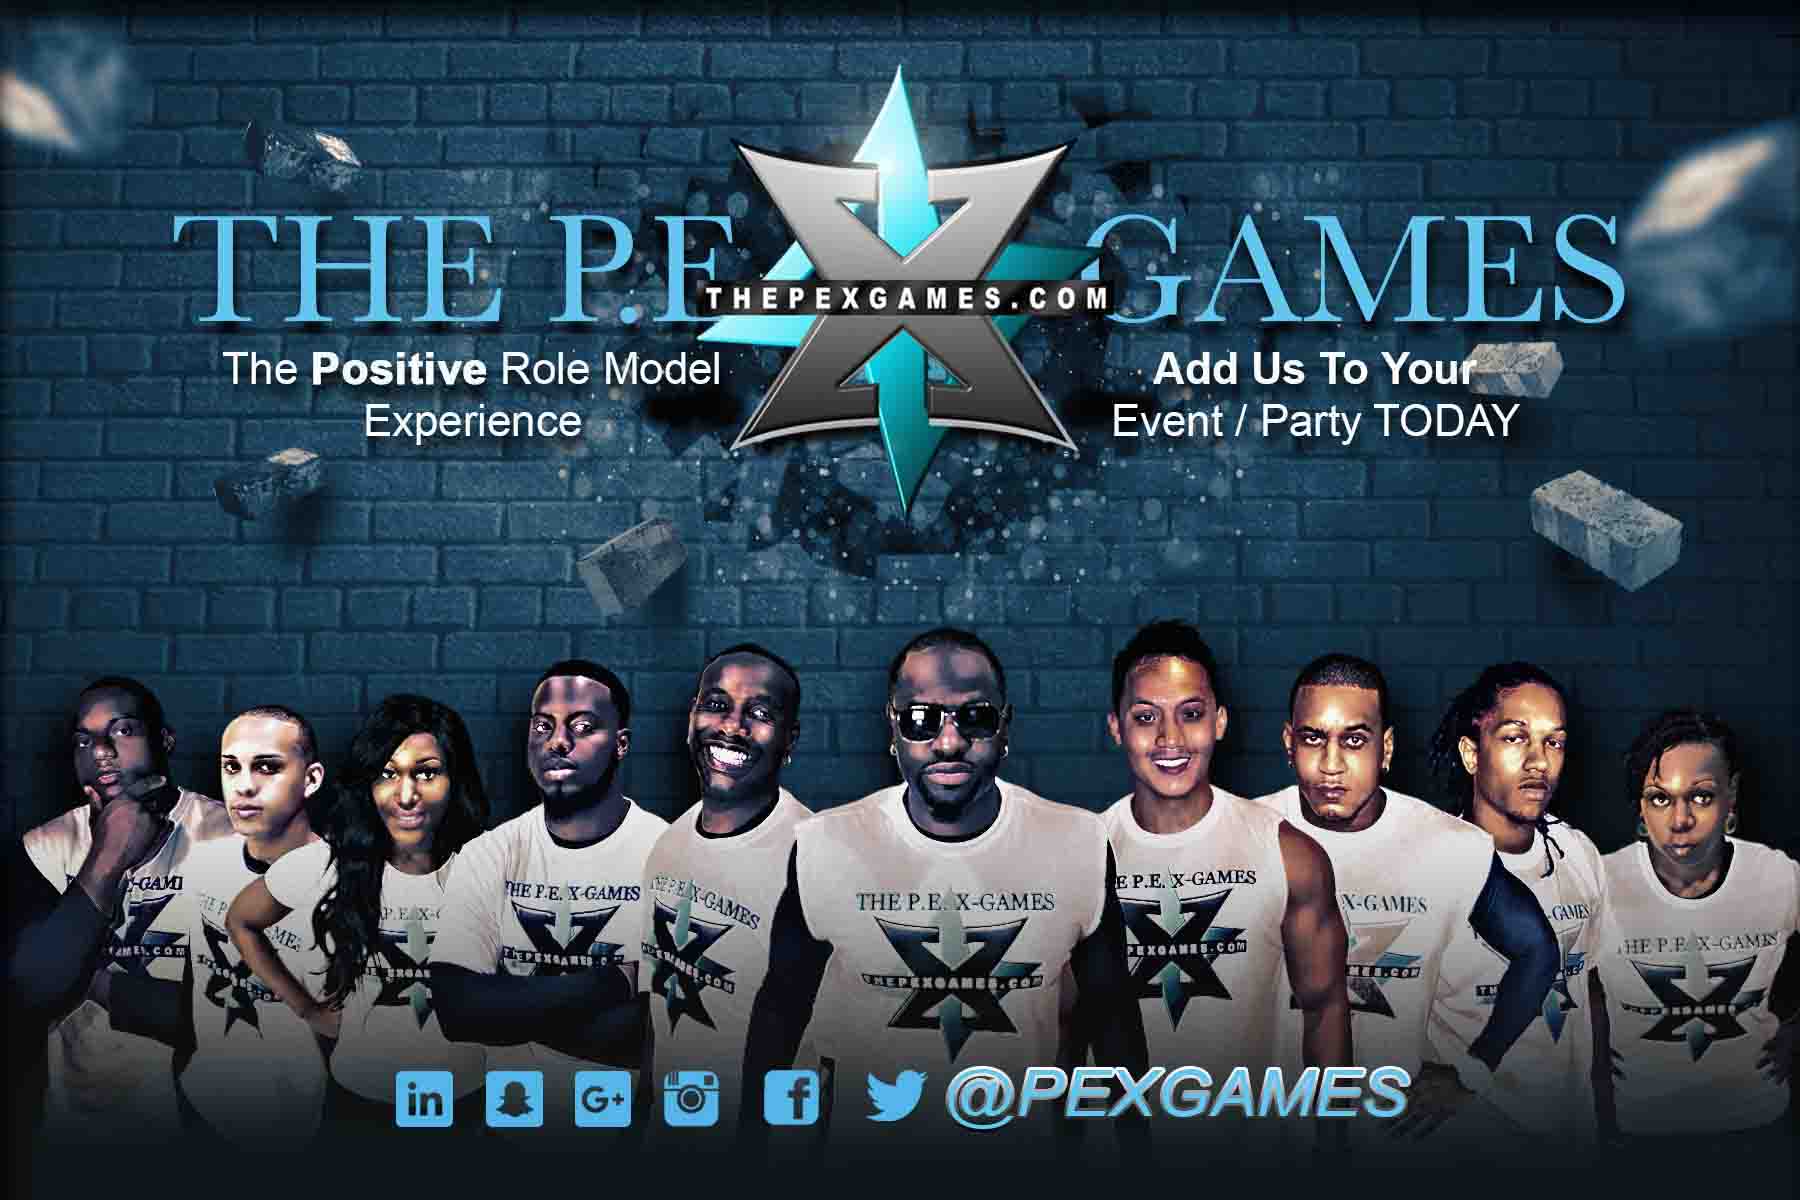 The P.E.X Games